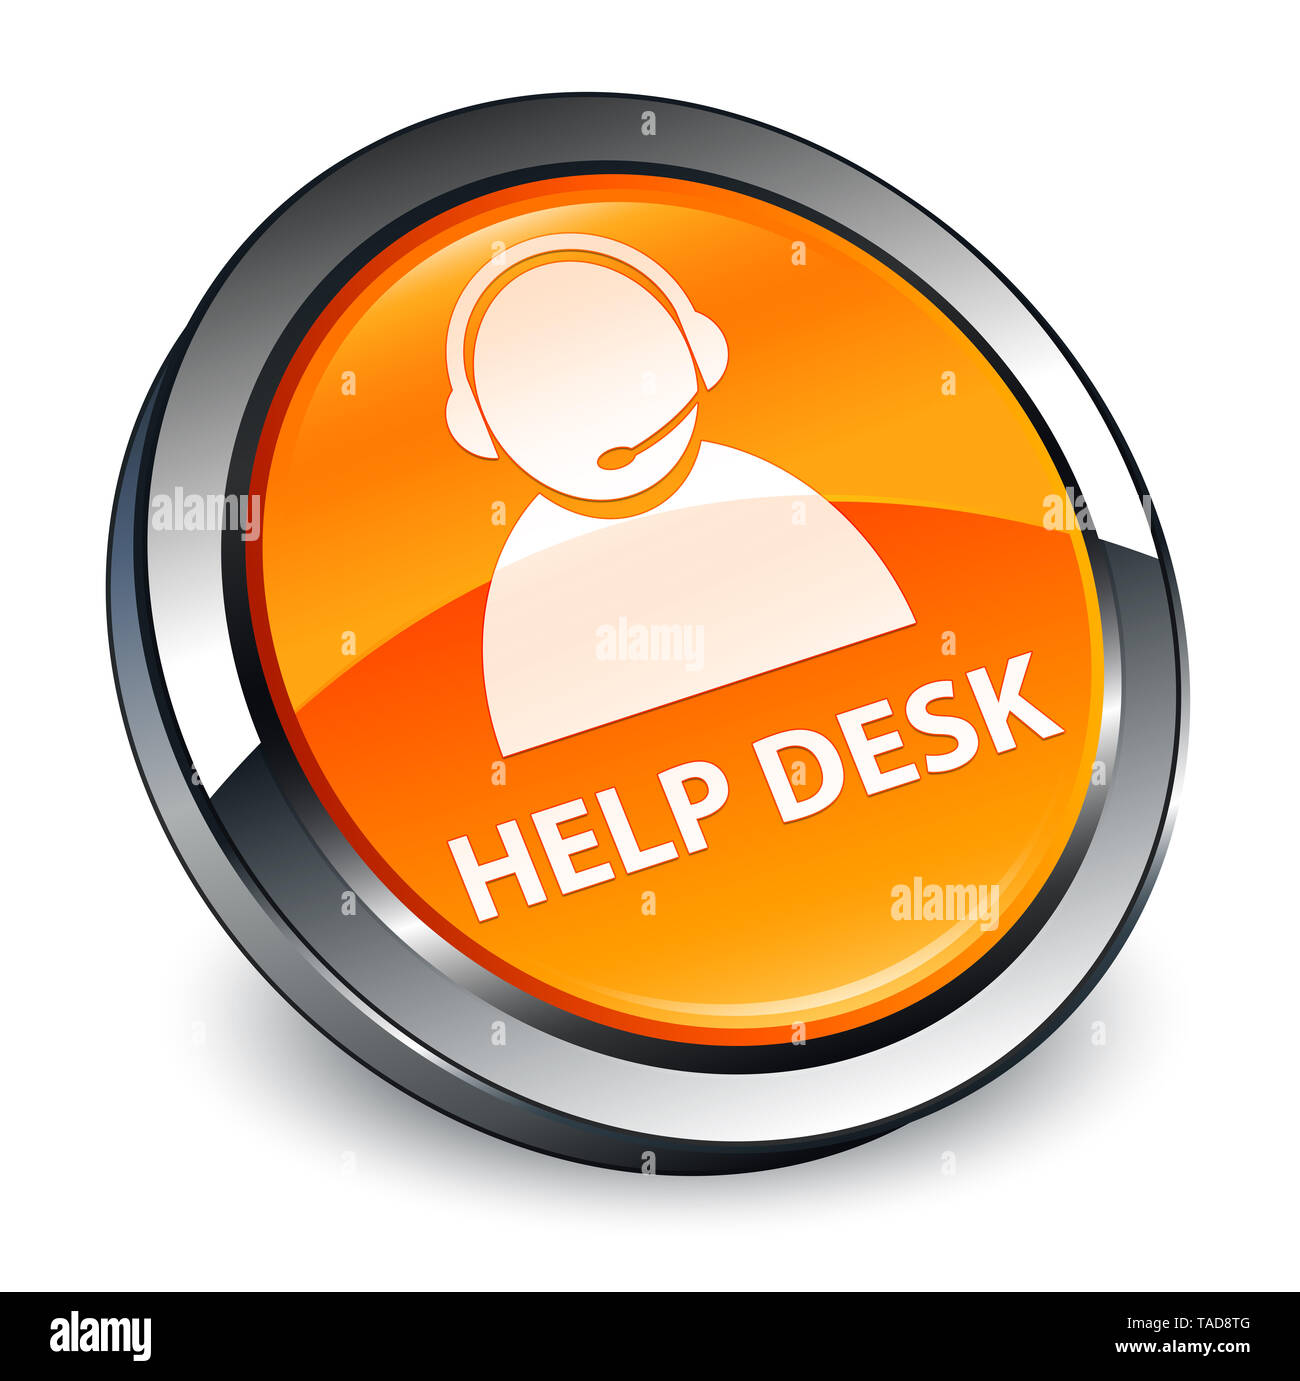 Help desk (customer care icona) isolati su 3d arancio pulsante rotondo illustrazione astratta Foto Stock